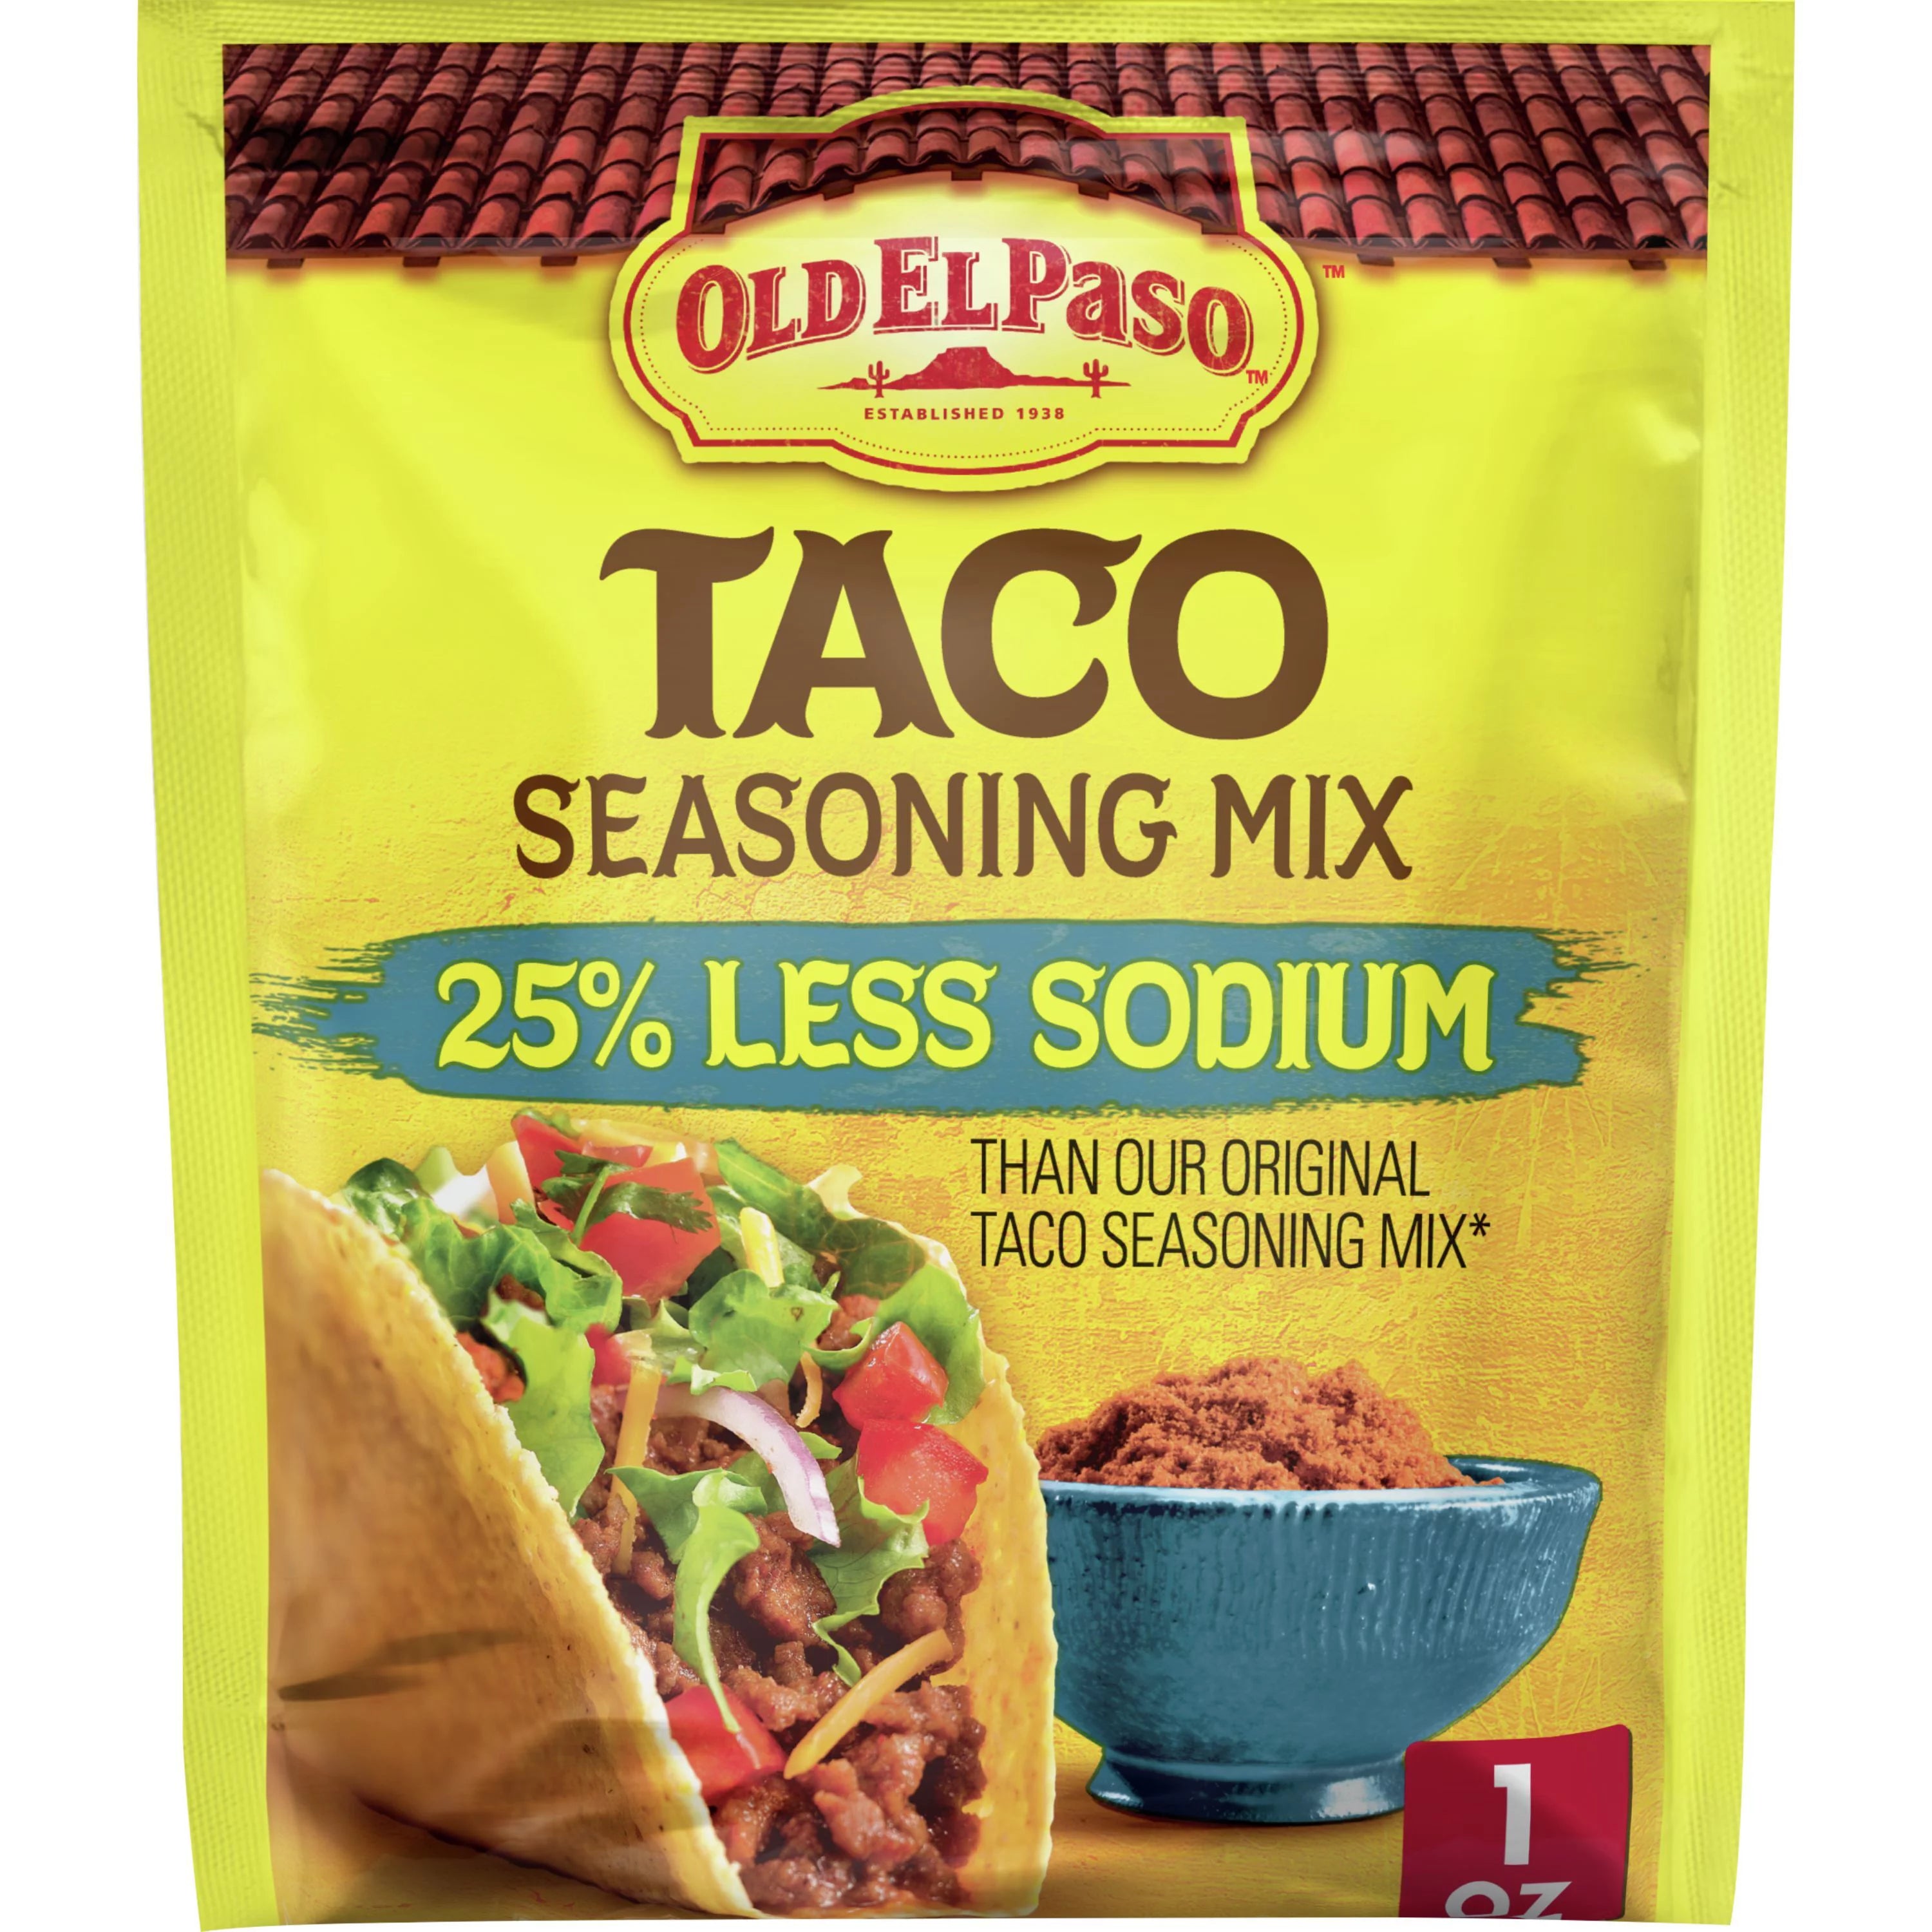 Old El Paso Taco Seasoning, 25% Less Sodium, 1 oz..